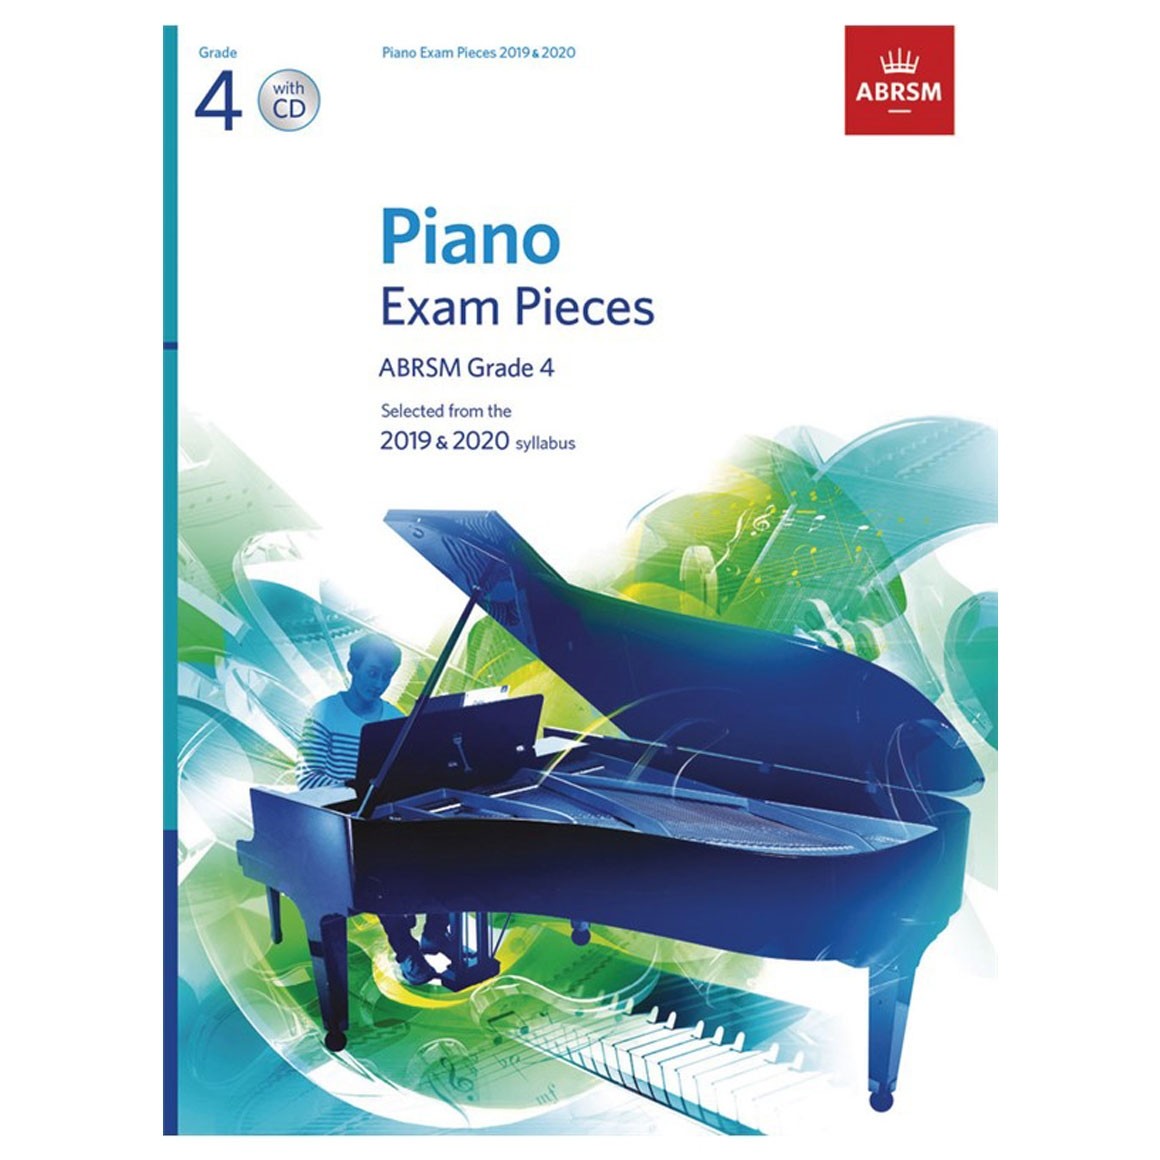 ABRSM Piano Exam Pieces 2019-2020 Book + CD - Grade 4